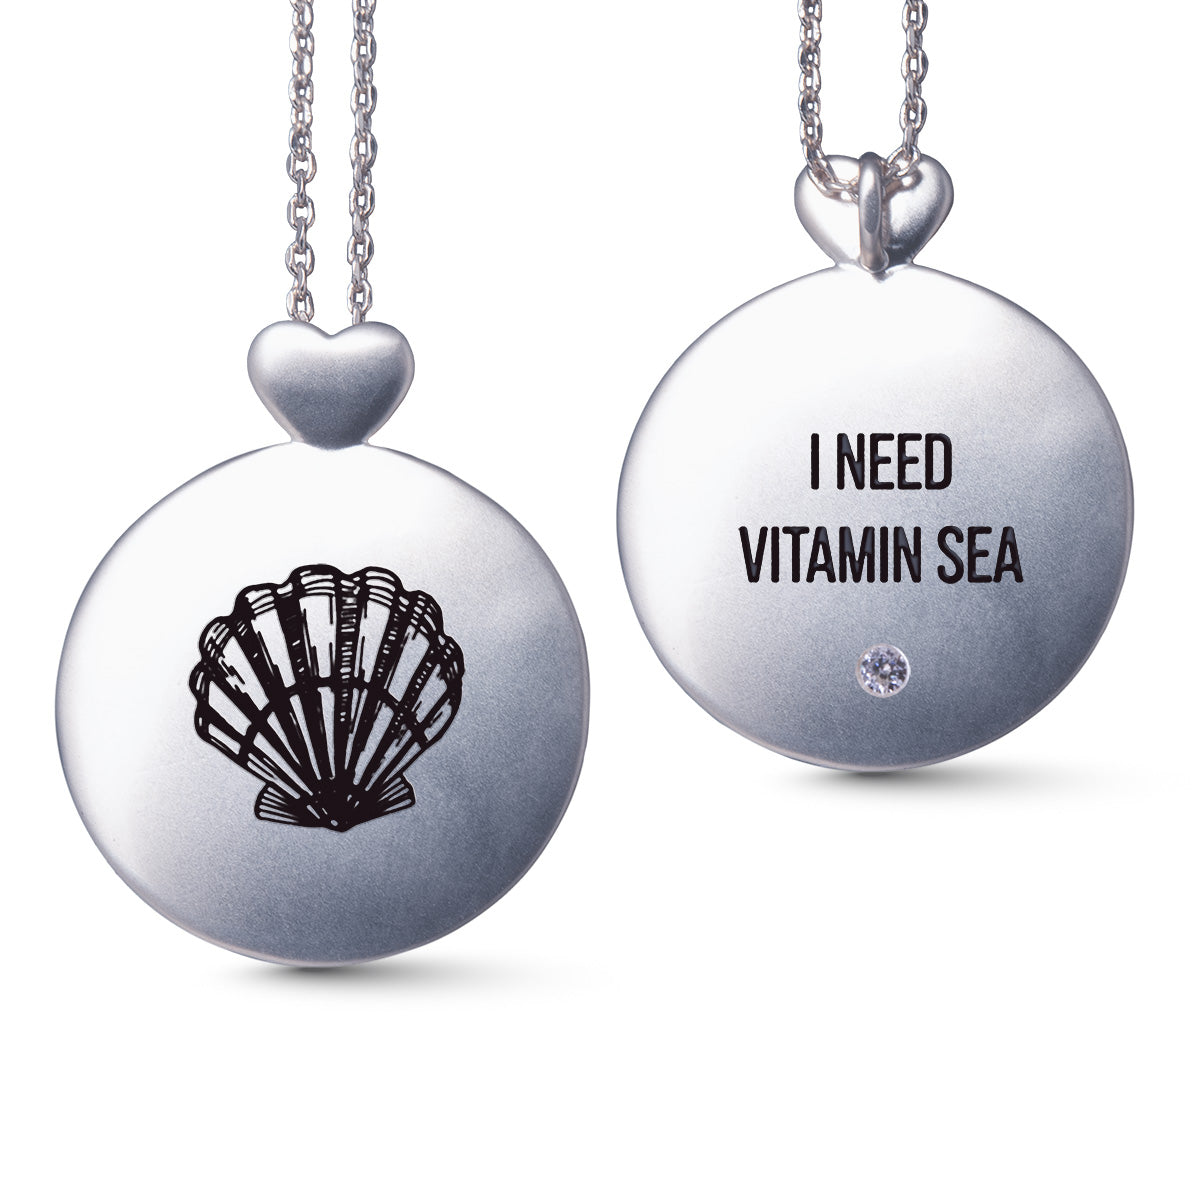 Silver Necklace w/ Vitamin Sea Pendant